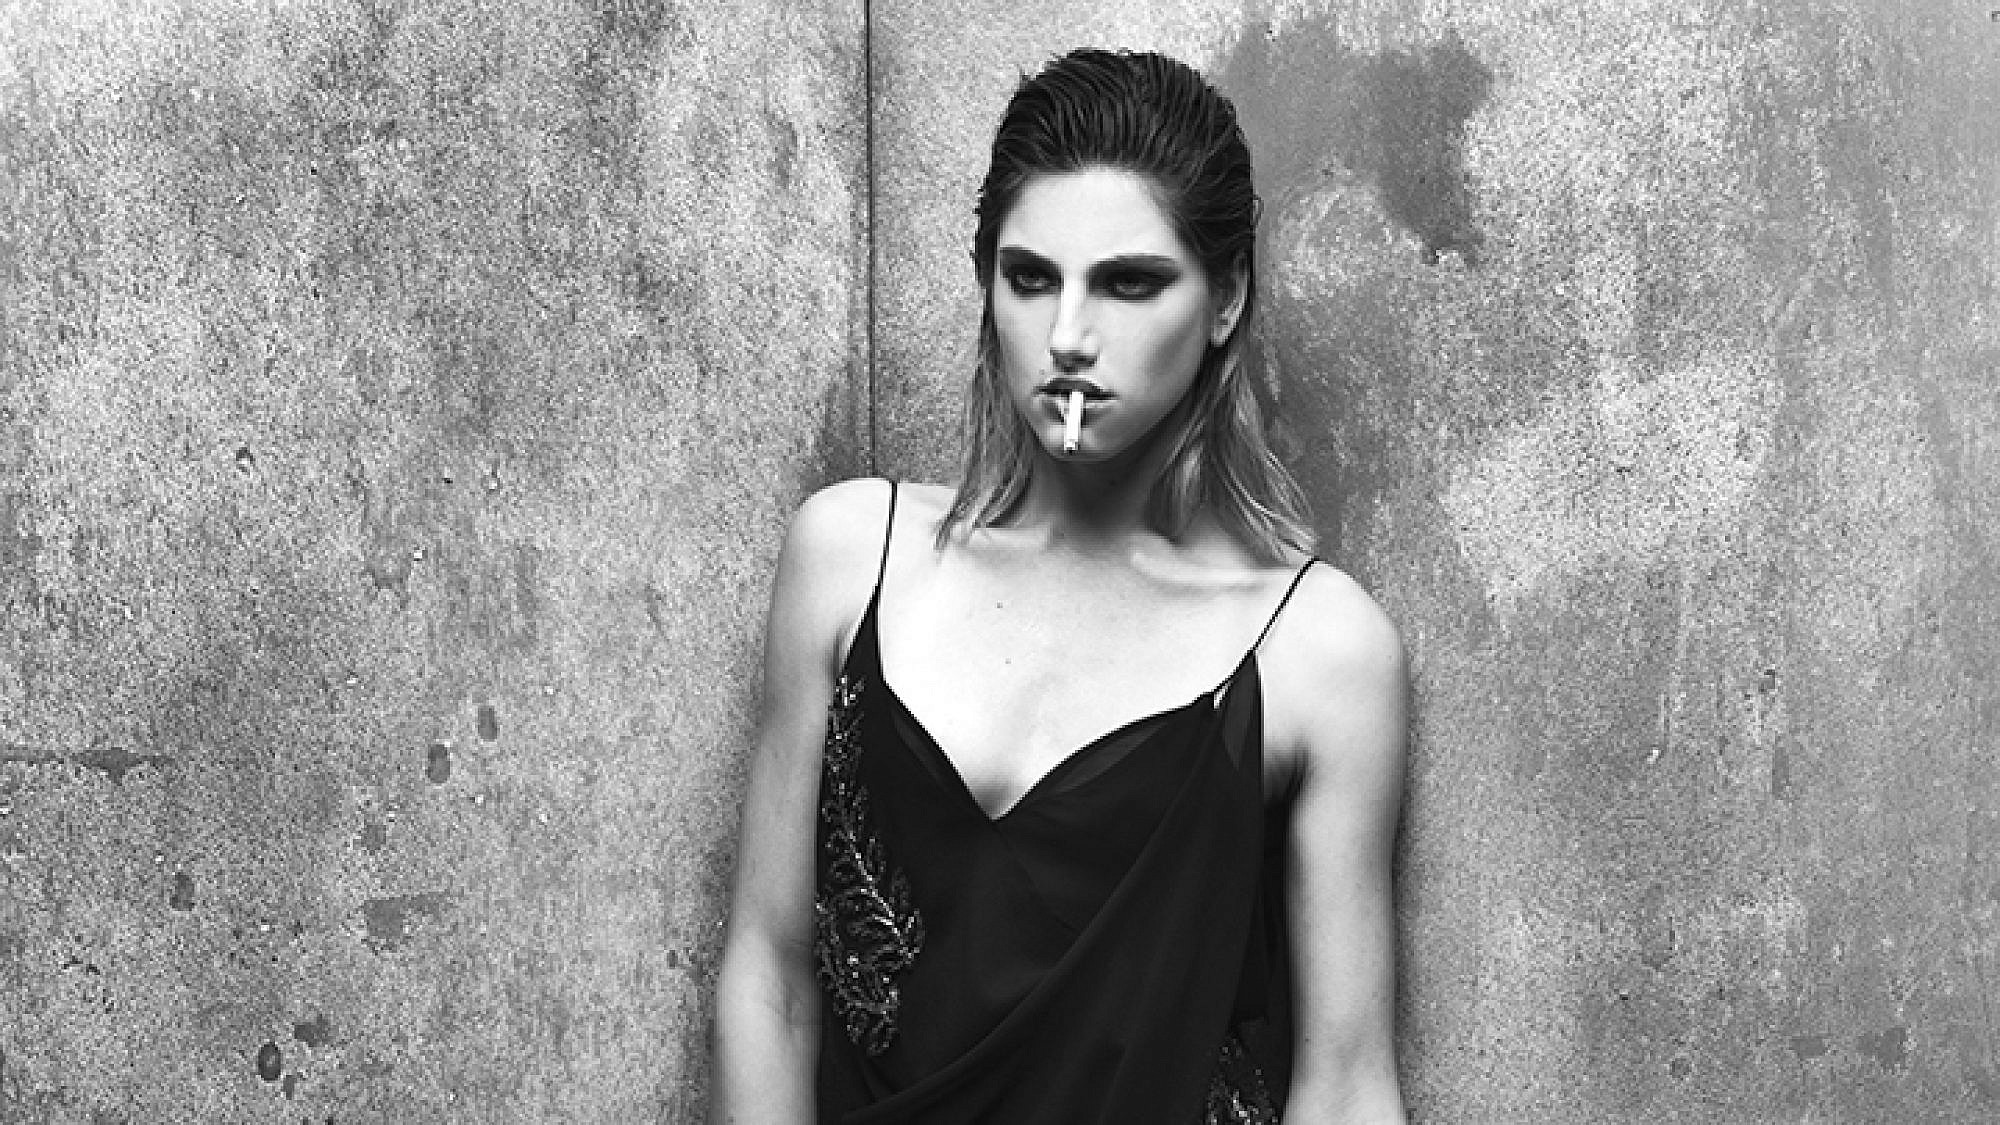 אריאל טולדנו לשבוע האופנה גינדי תל אביב | צילום: רונן פדידה